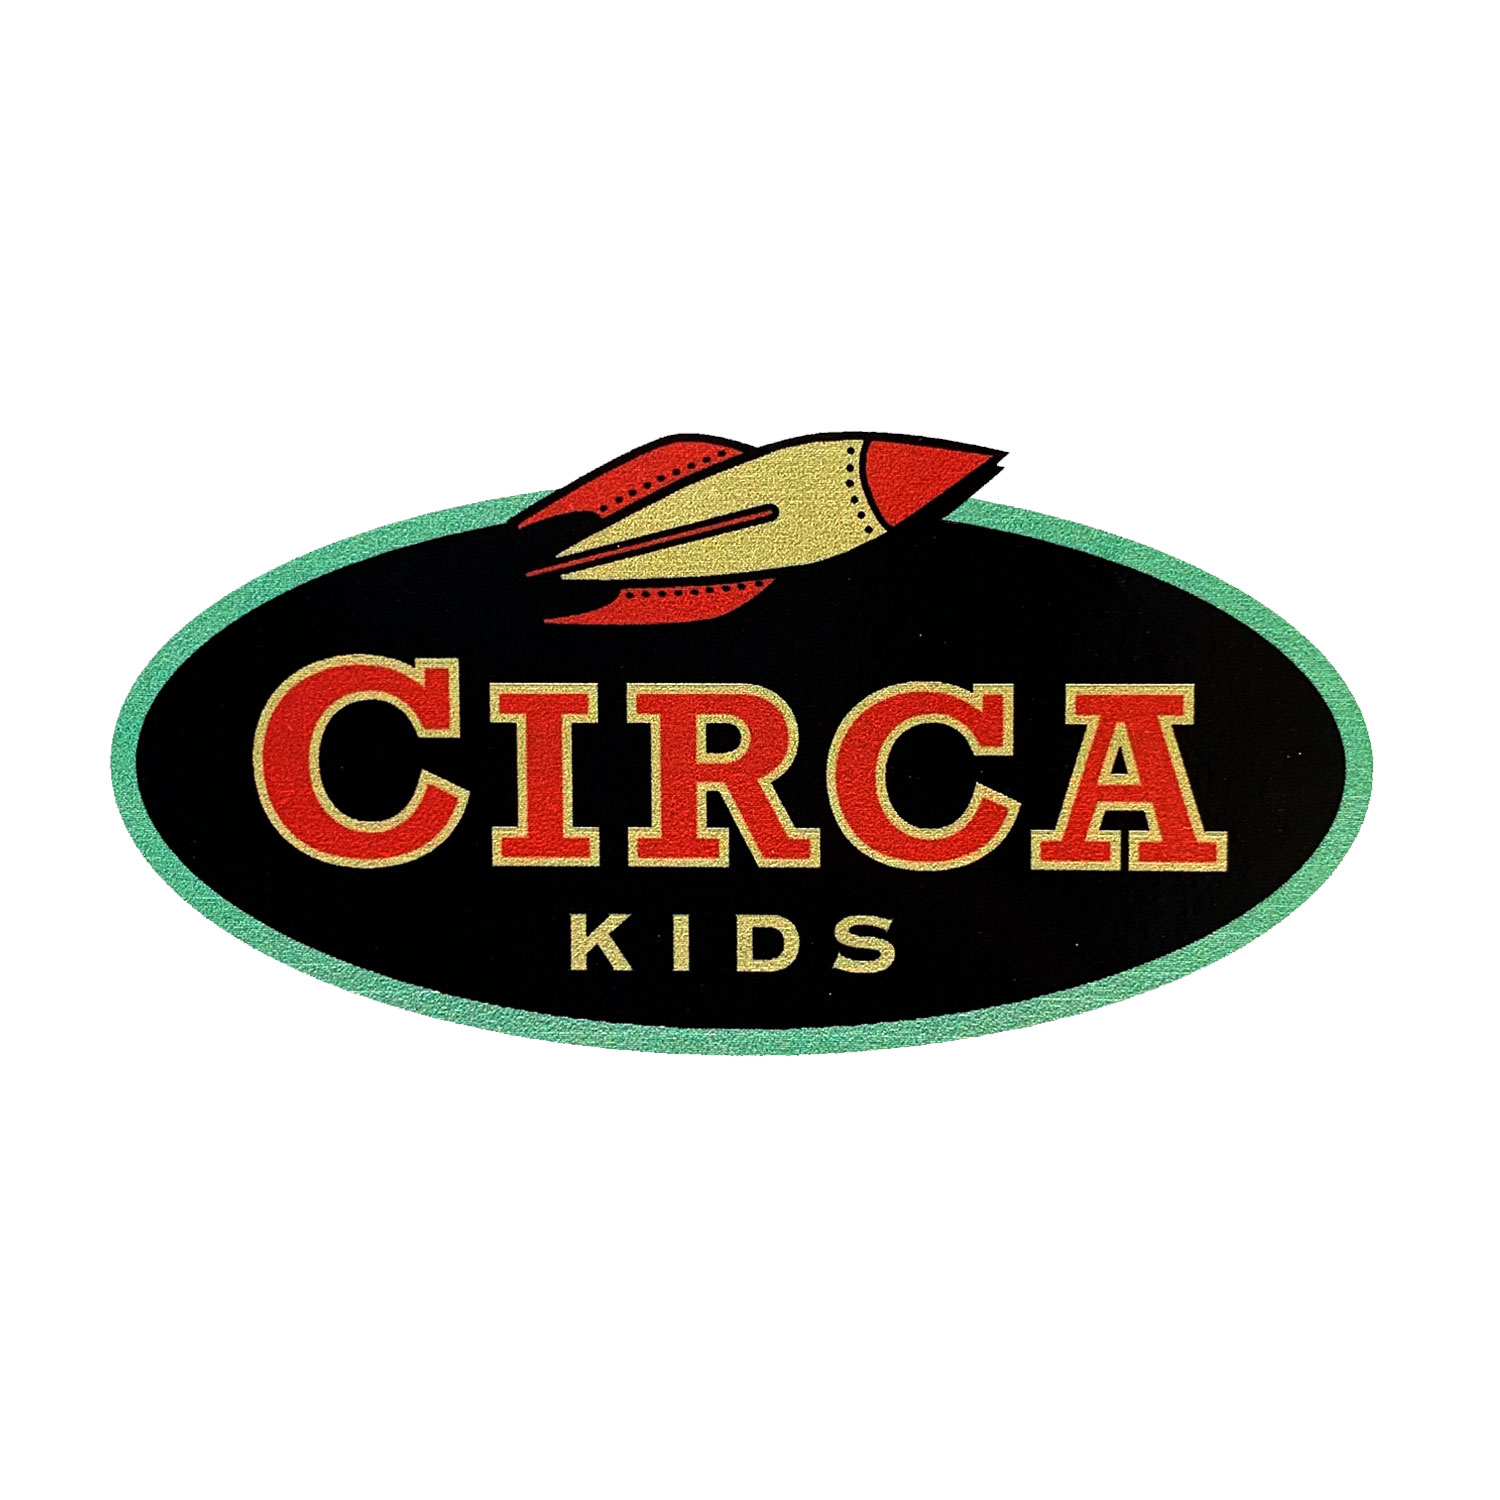 FP_Circa_Kids_Rocket